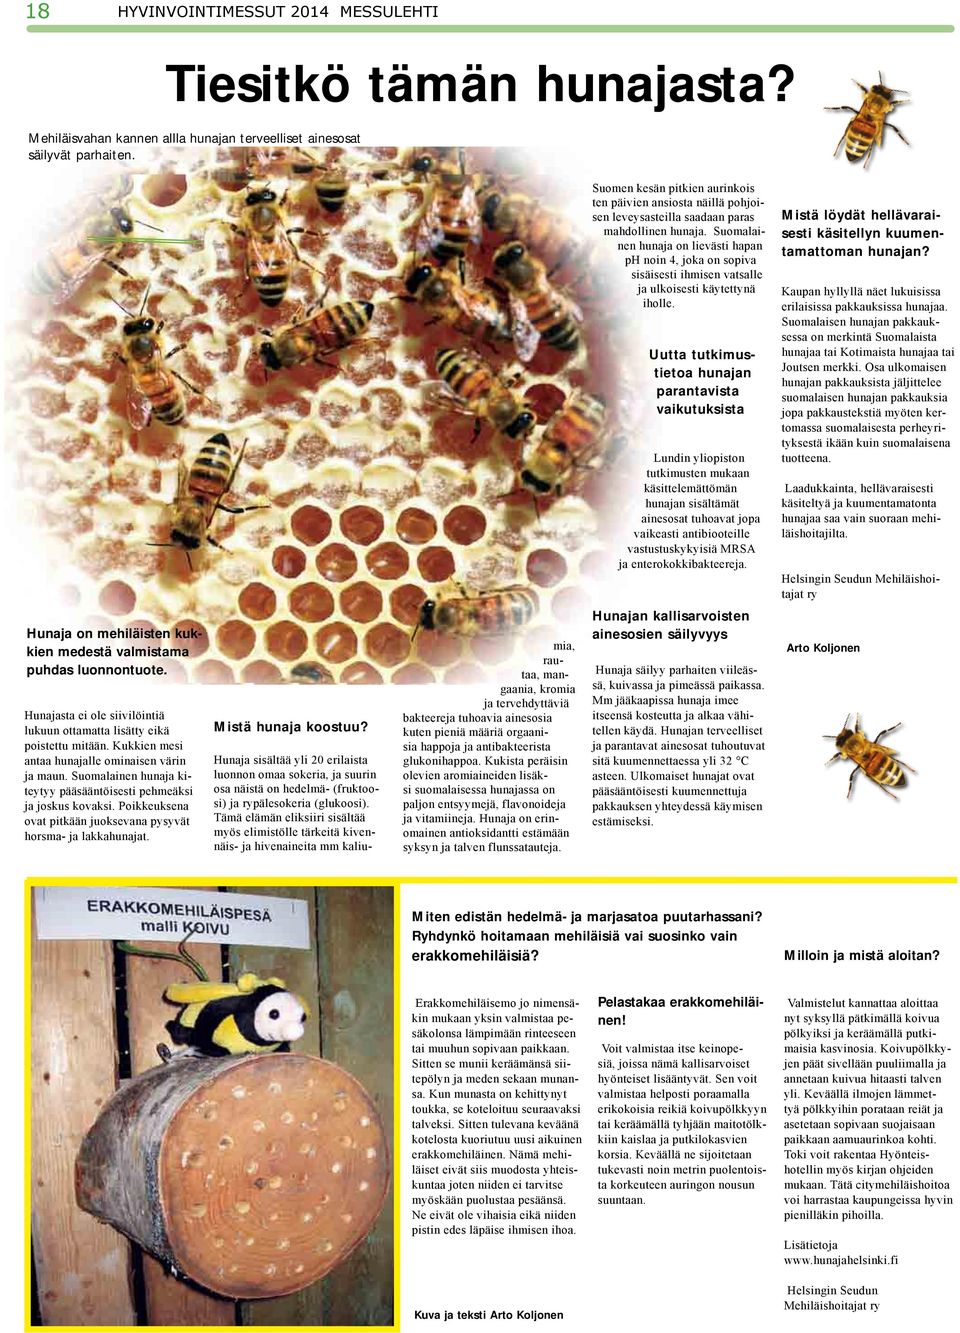 Kukkien mesi antaa hunajalle ominaisen värin ja maun. Suomalainen hunaja kiteytyy pääsääntöisesti pehmeäksi ja joskus kovaksi. Poikkeuksena ovat pitkään juoksevana pysyvät horsma- ja lakkahunajat.